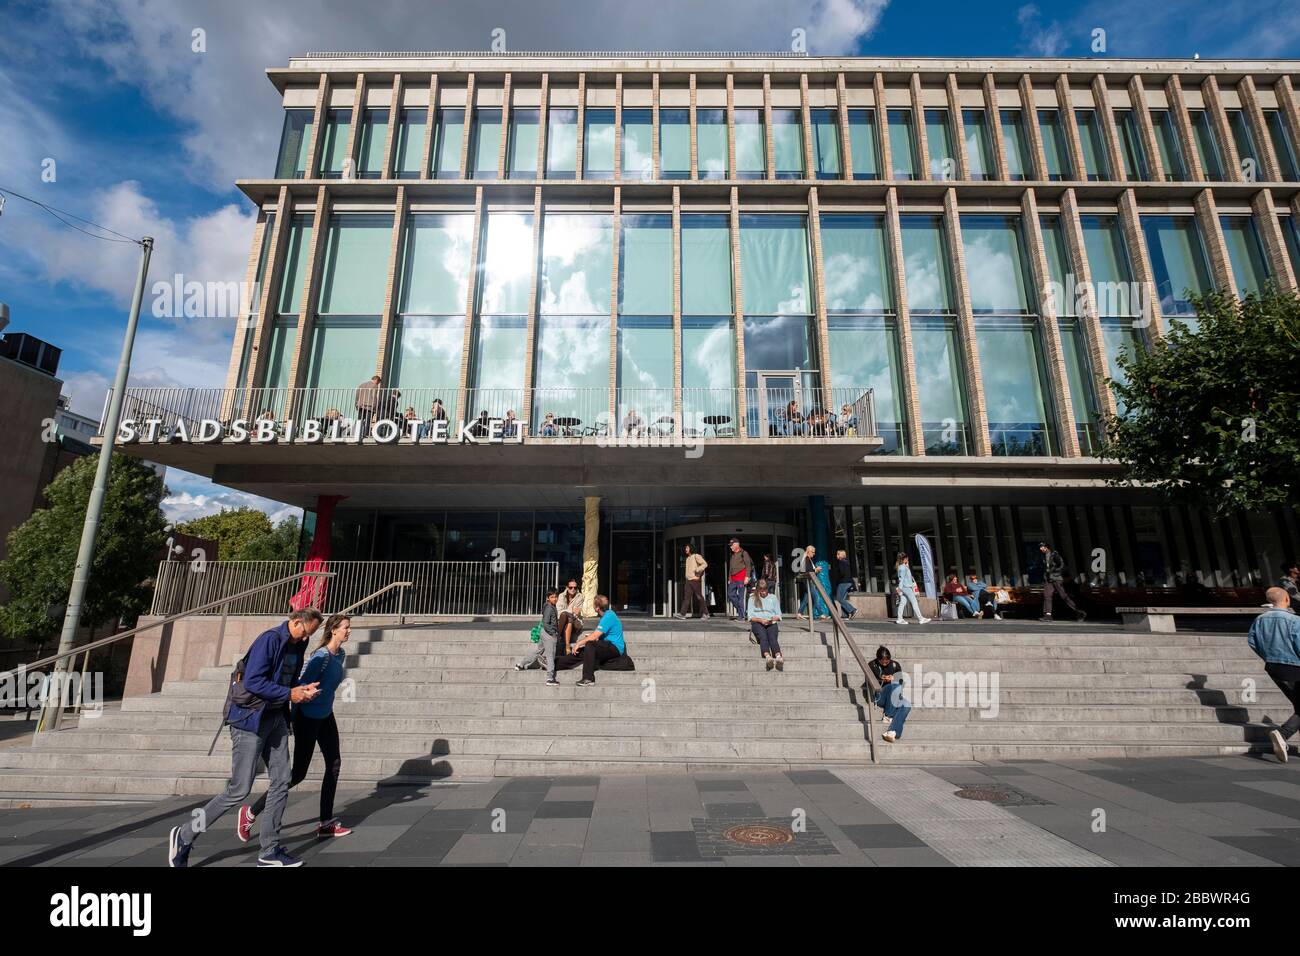 Gothenburg City Library - Stadsbiblioteket Göteborg in Gothenburg, Sweden, Europe Stock Photo